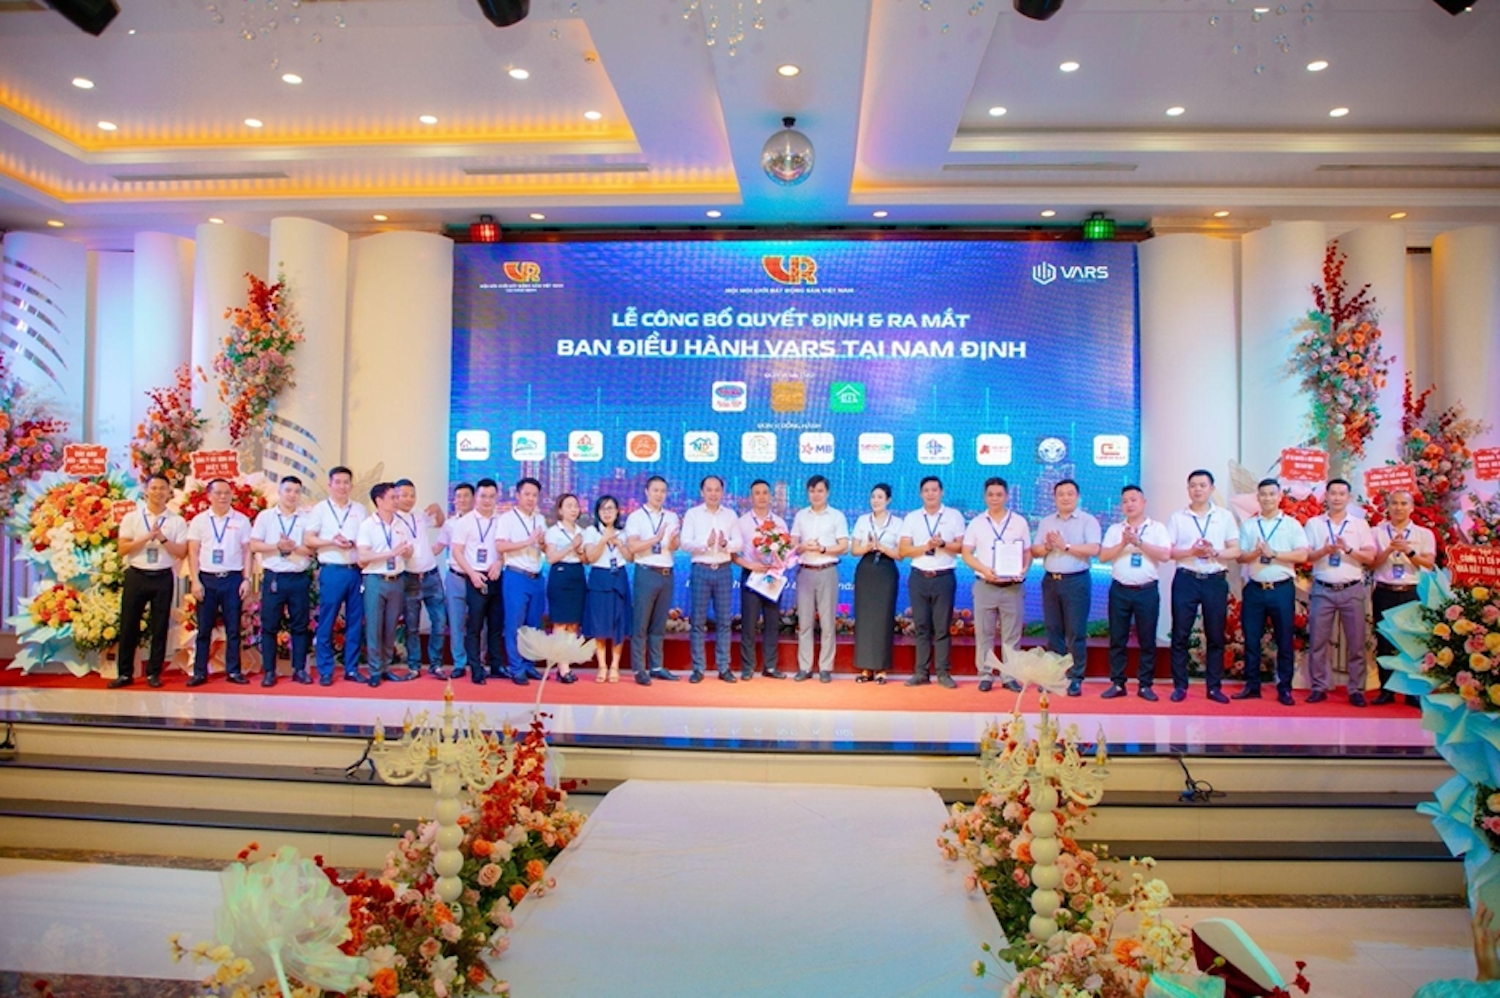 Hội Môi giới bất động sản Việt Nam ra mắt ban điều hành tại Nam Định